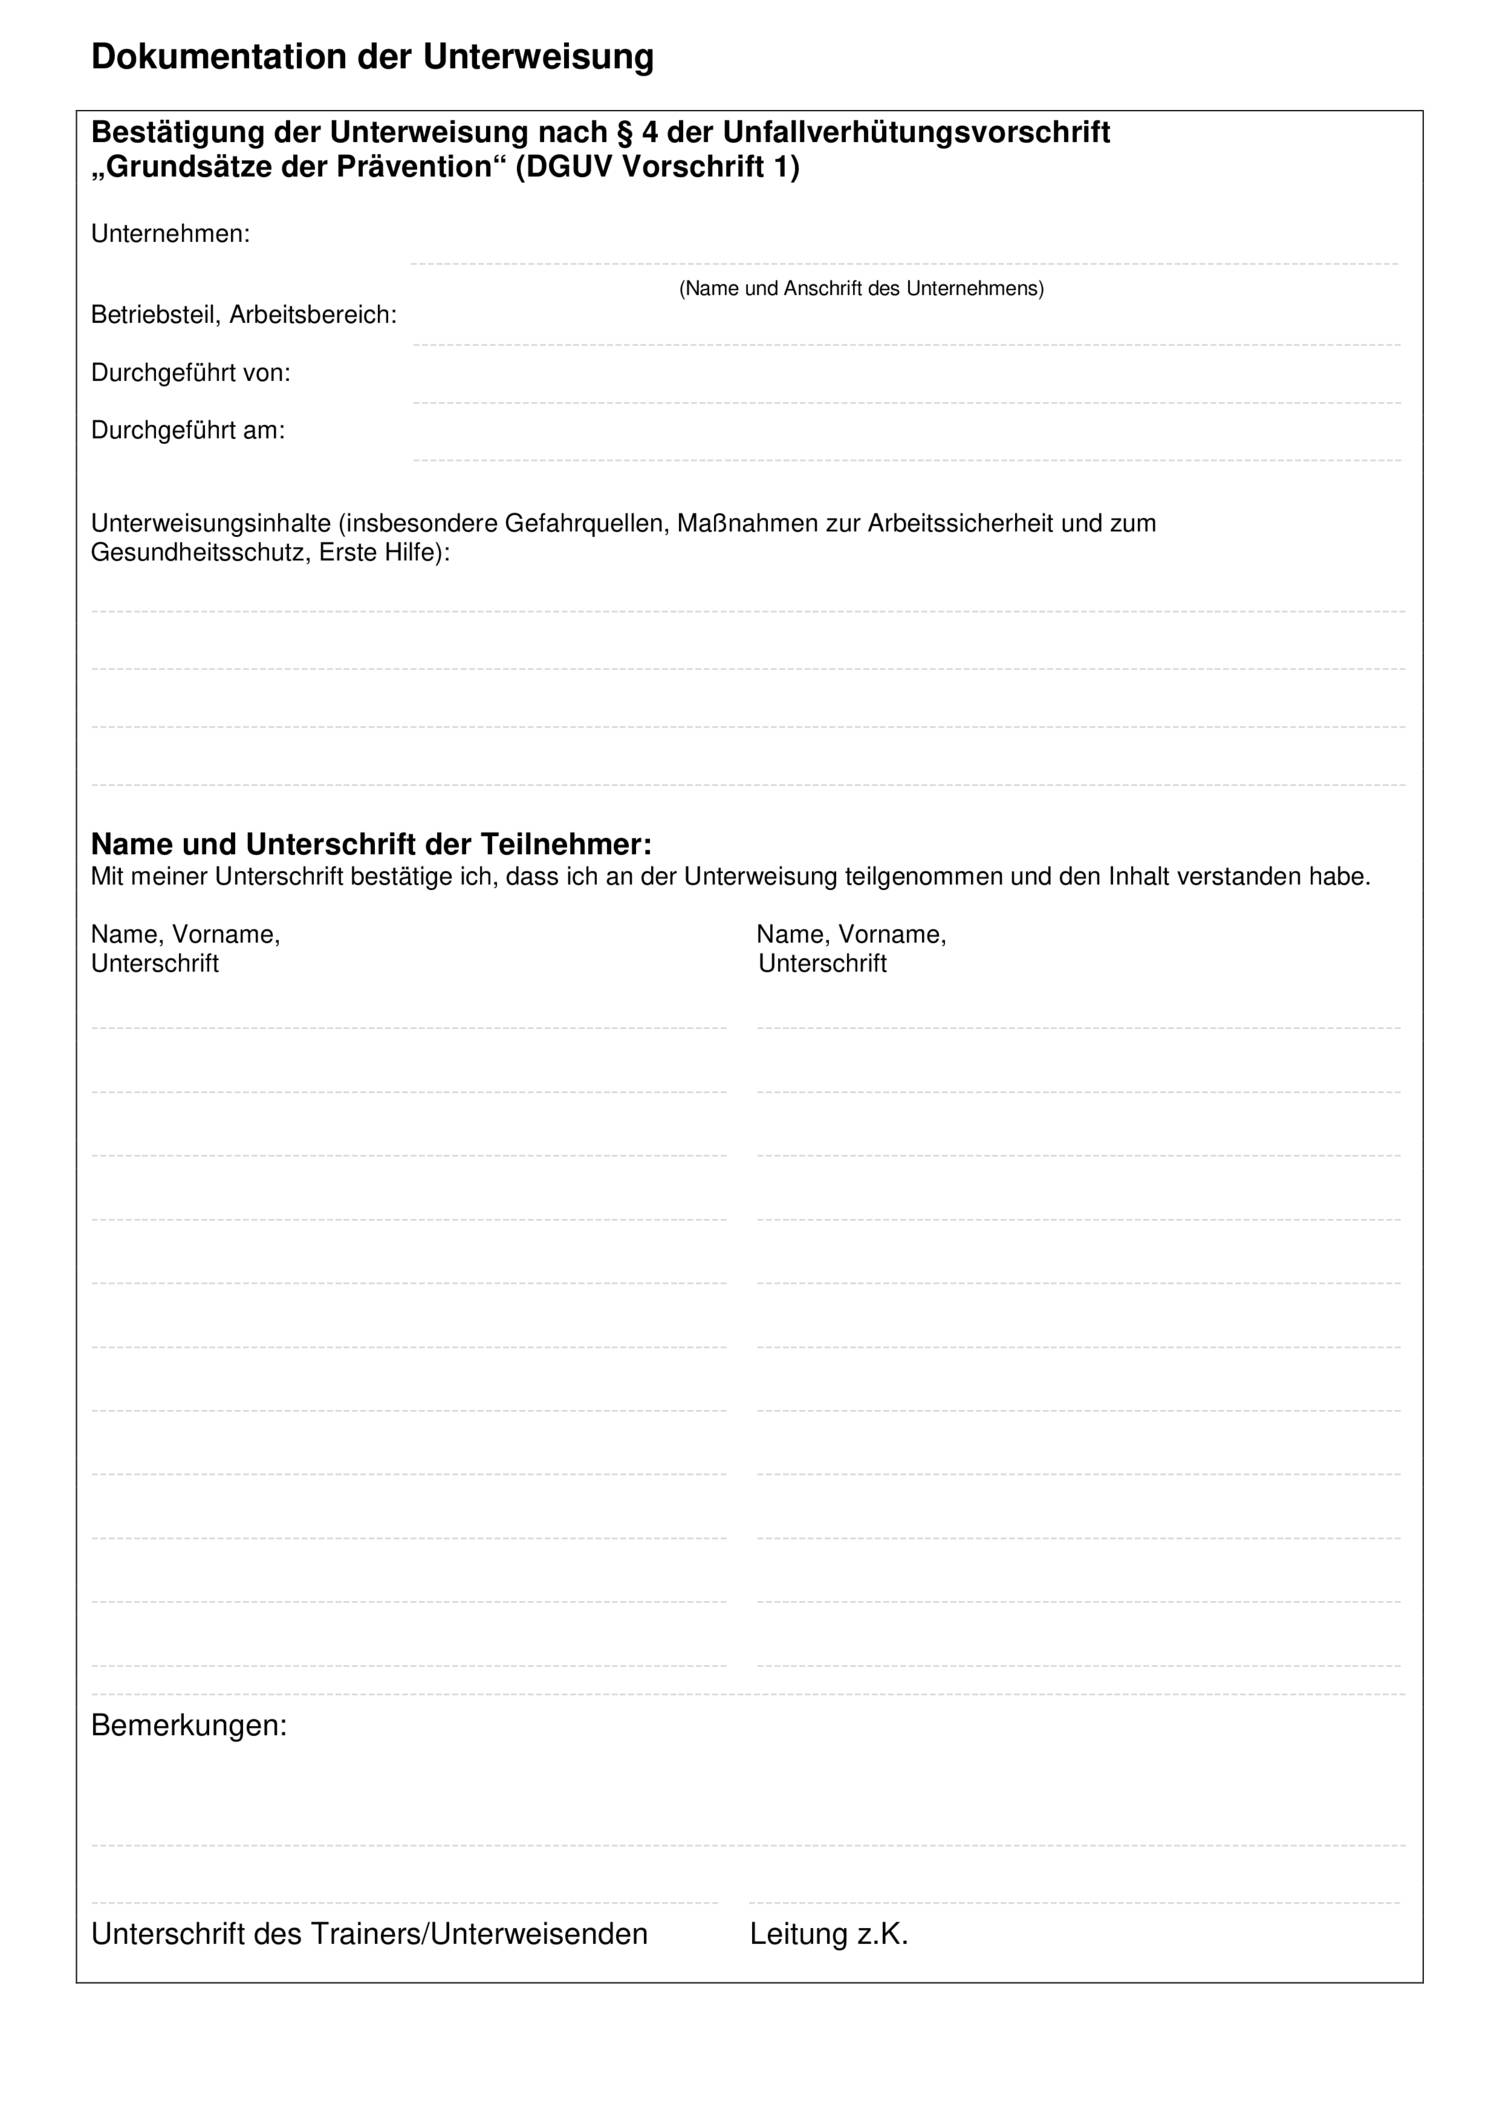 Muster_fuer_die_Dokumentation_der_Unterweisung.pdf DocDroid